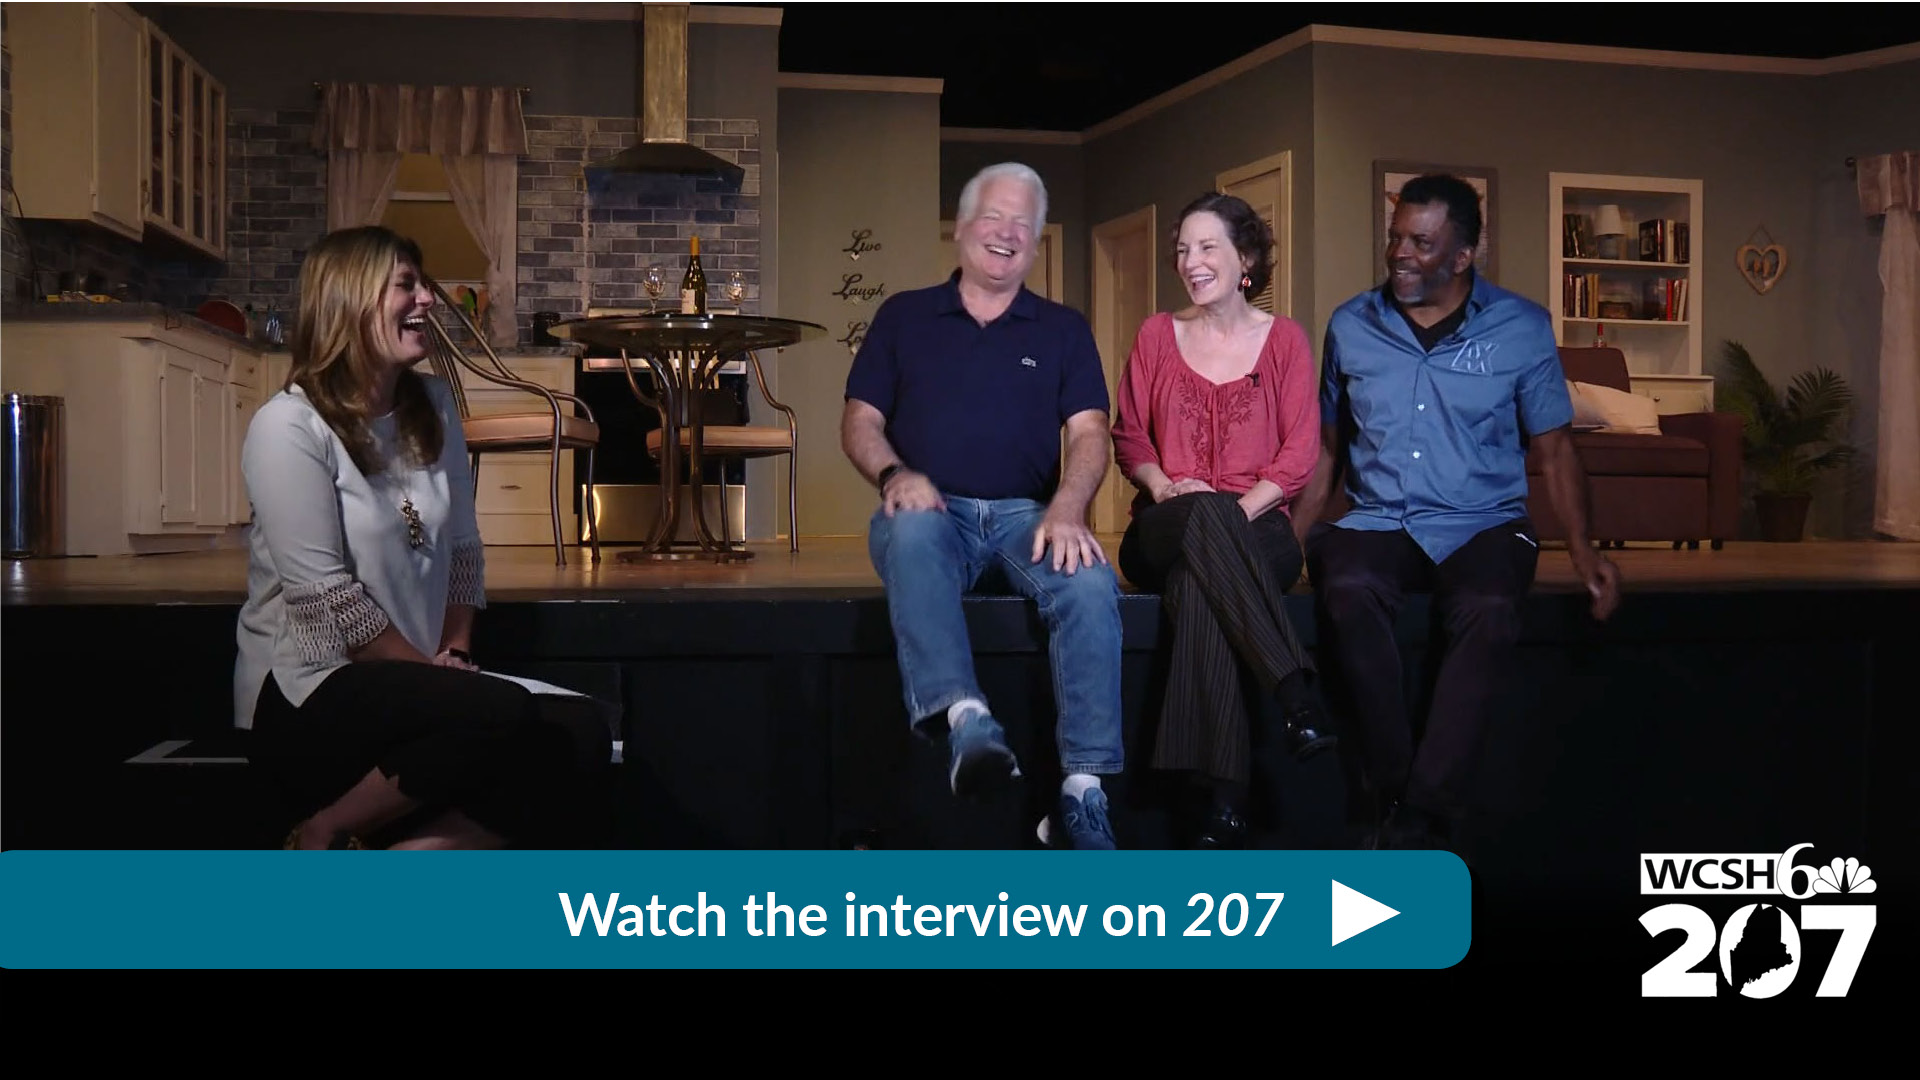 VIDEO: Interview on WCSH 207